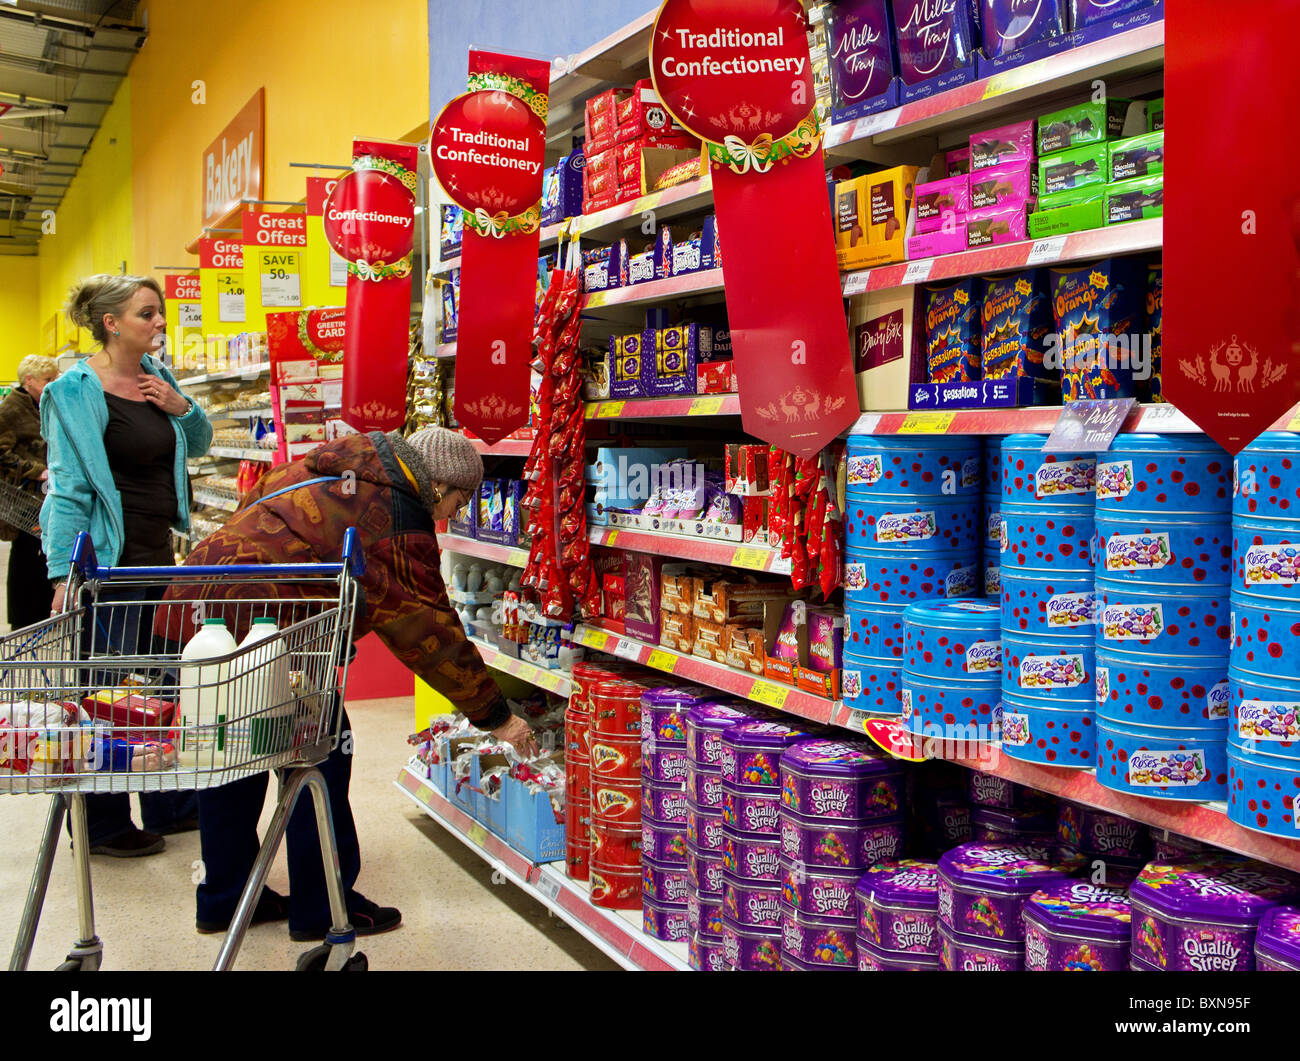 I clienti che comprano dolci di natale in un supermercato Tesco, Regno Unito Foto Stock